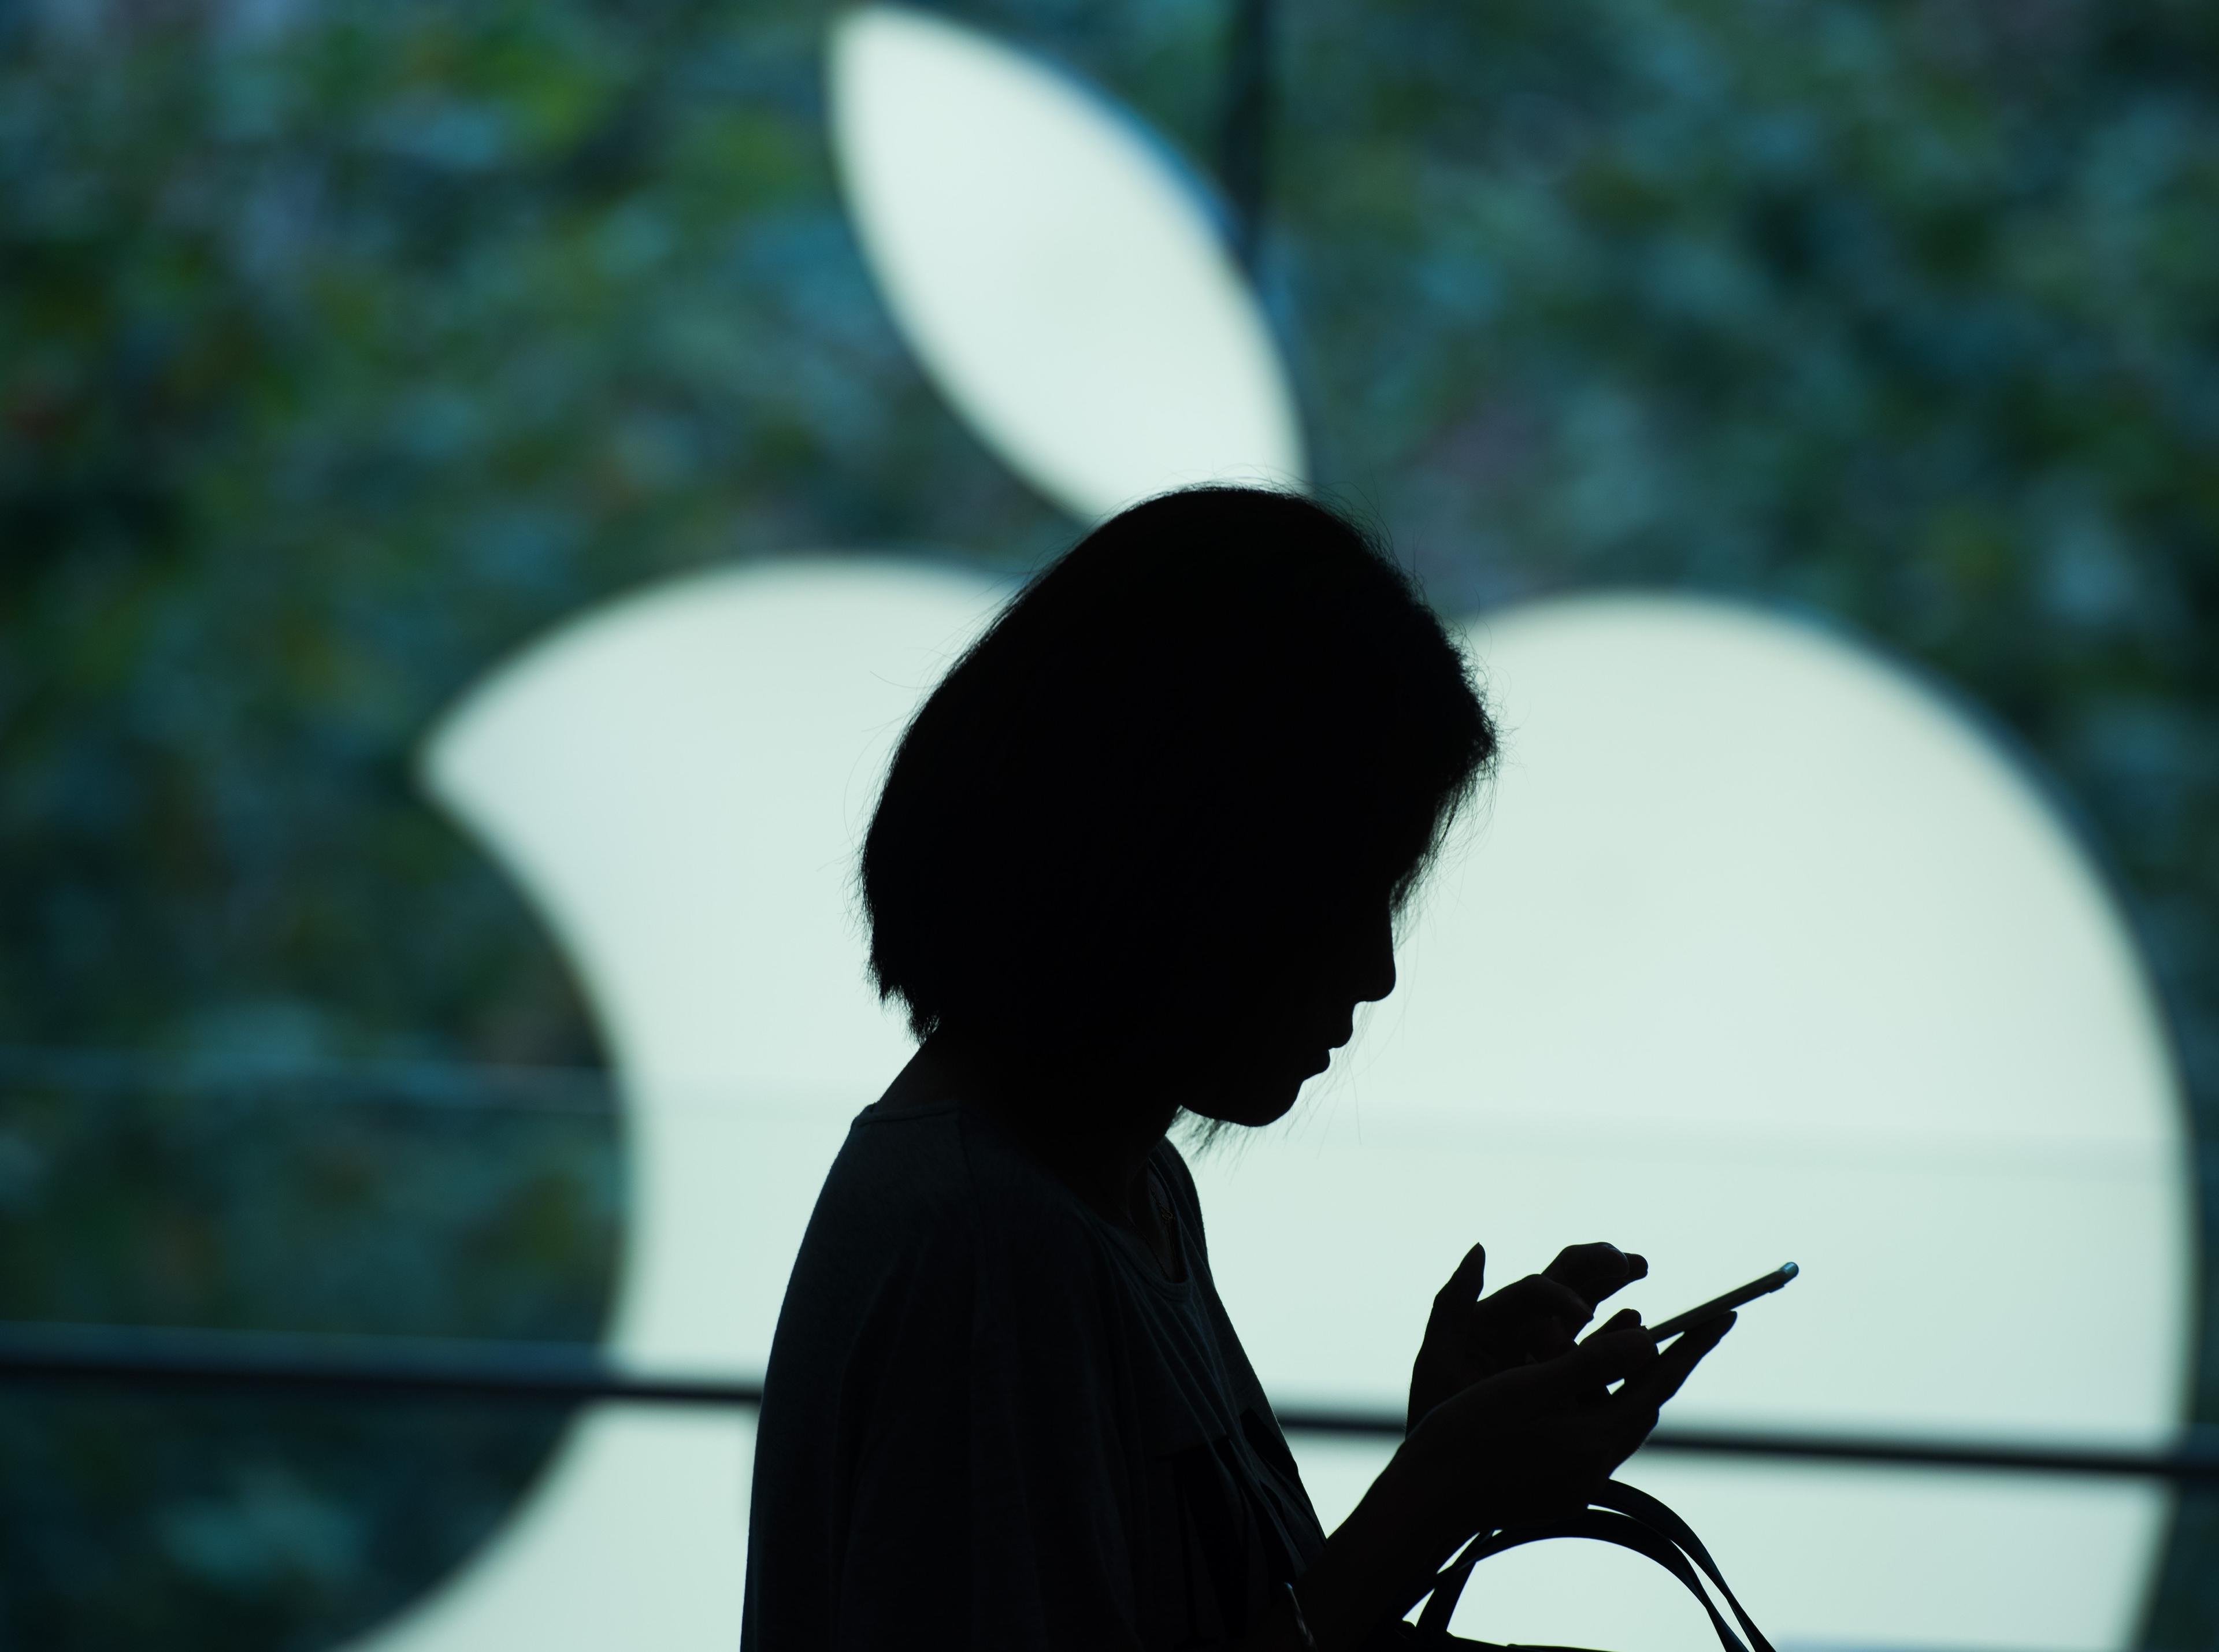 Det kinesiska företaget Youmi dolde sitt spionage i appar. Det hela resulterade i att App Store tog bort 256 appar. (Foto: Johannes Eisele /AFP/Getty Images)